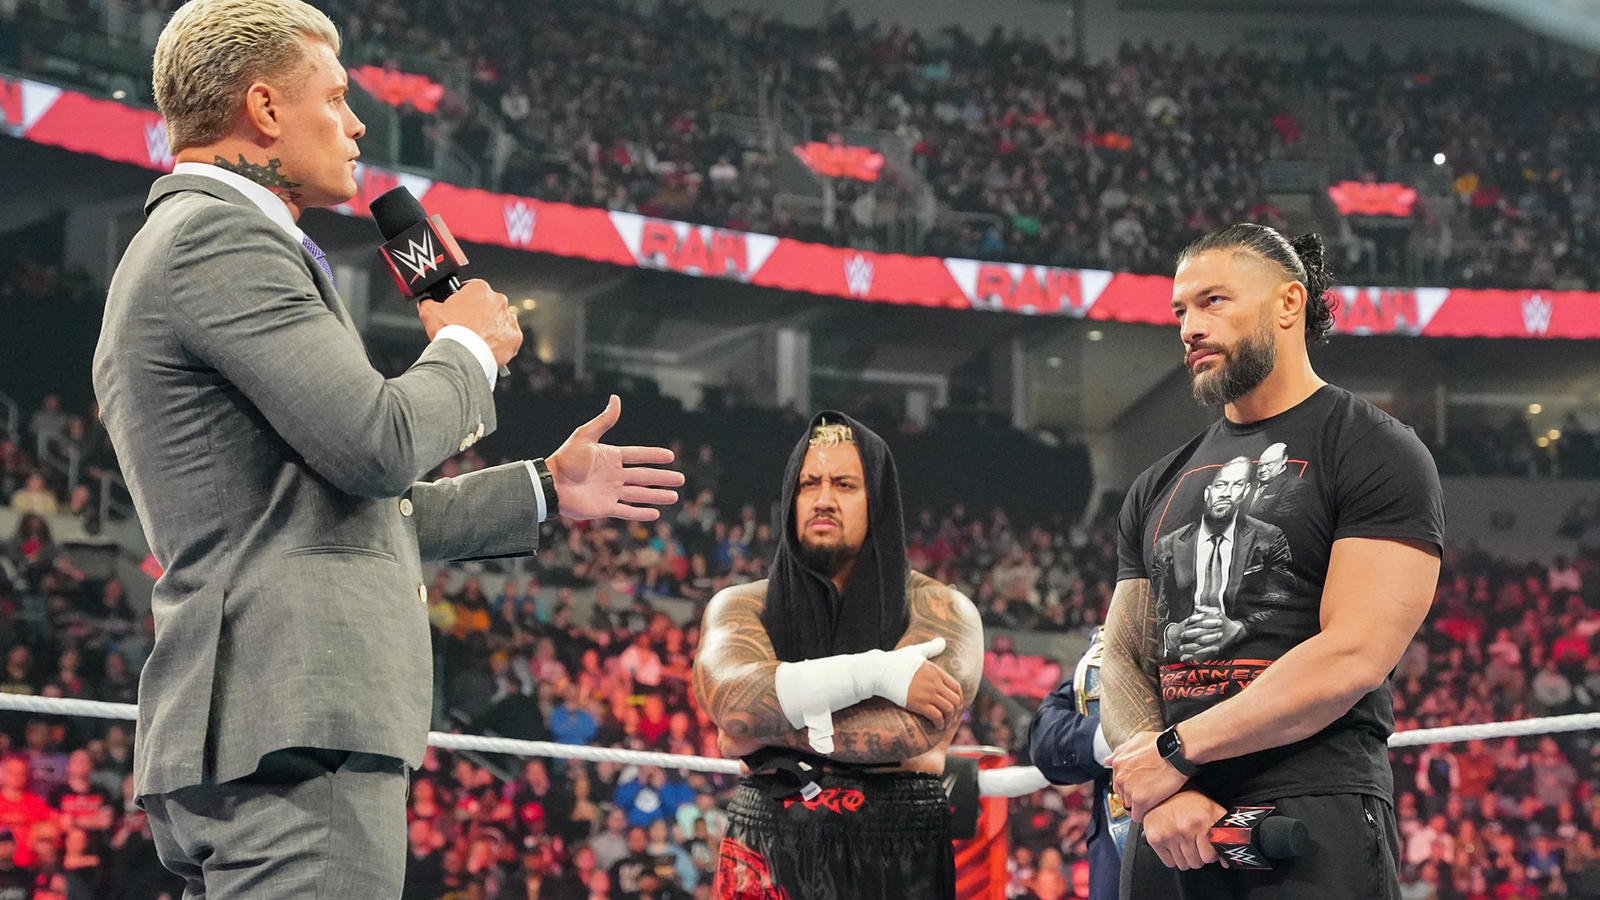 Роман Рейнс на Raw сделал отсылку на AEW; WWE тизерят большое предательство?